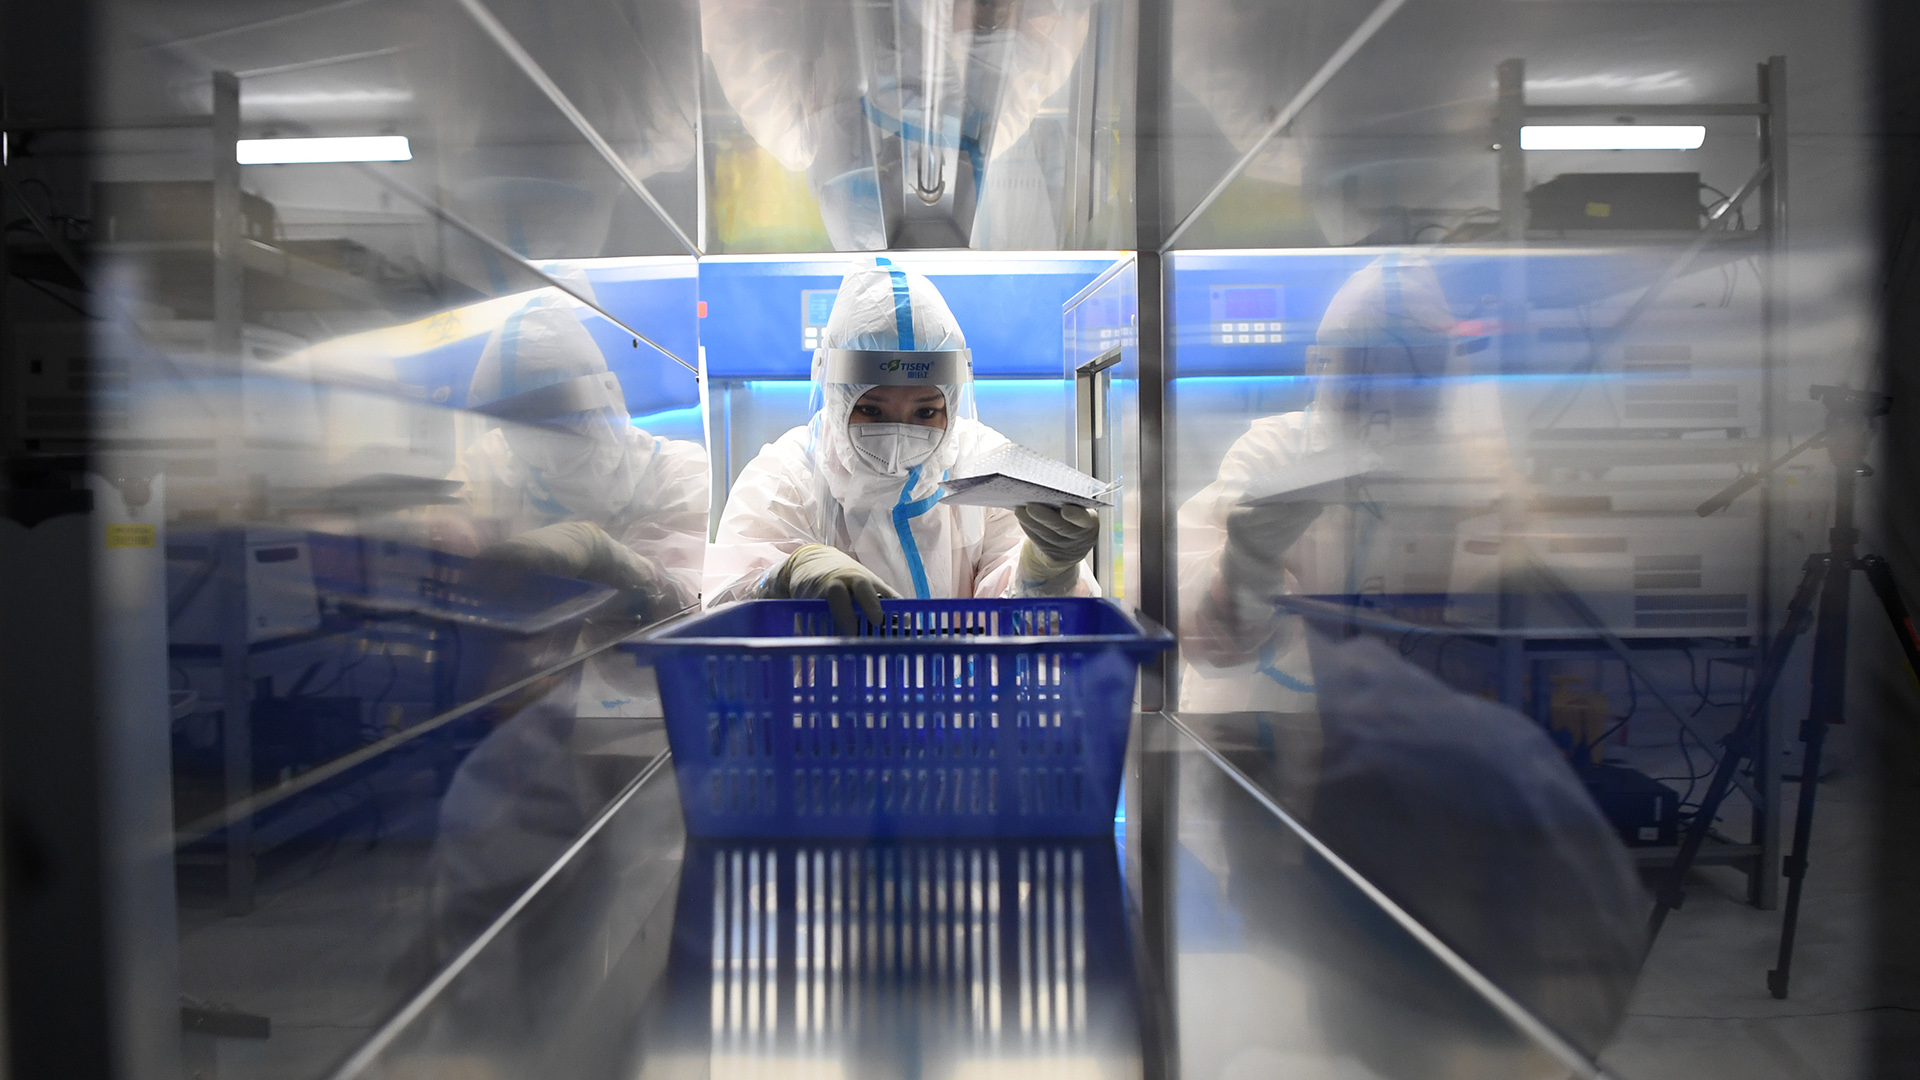  Eine medizinische Angestellte trägt einen Schutzanzug und hat einen blauen Korb in der Hand, während sie in einem chinesischen Testlabor für Corona-Tests arbeitet. | dpa